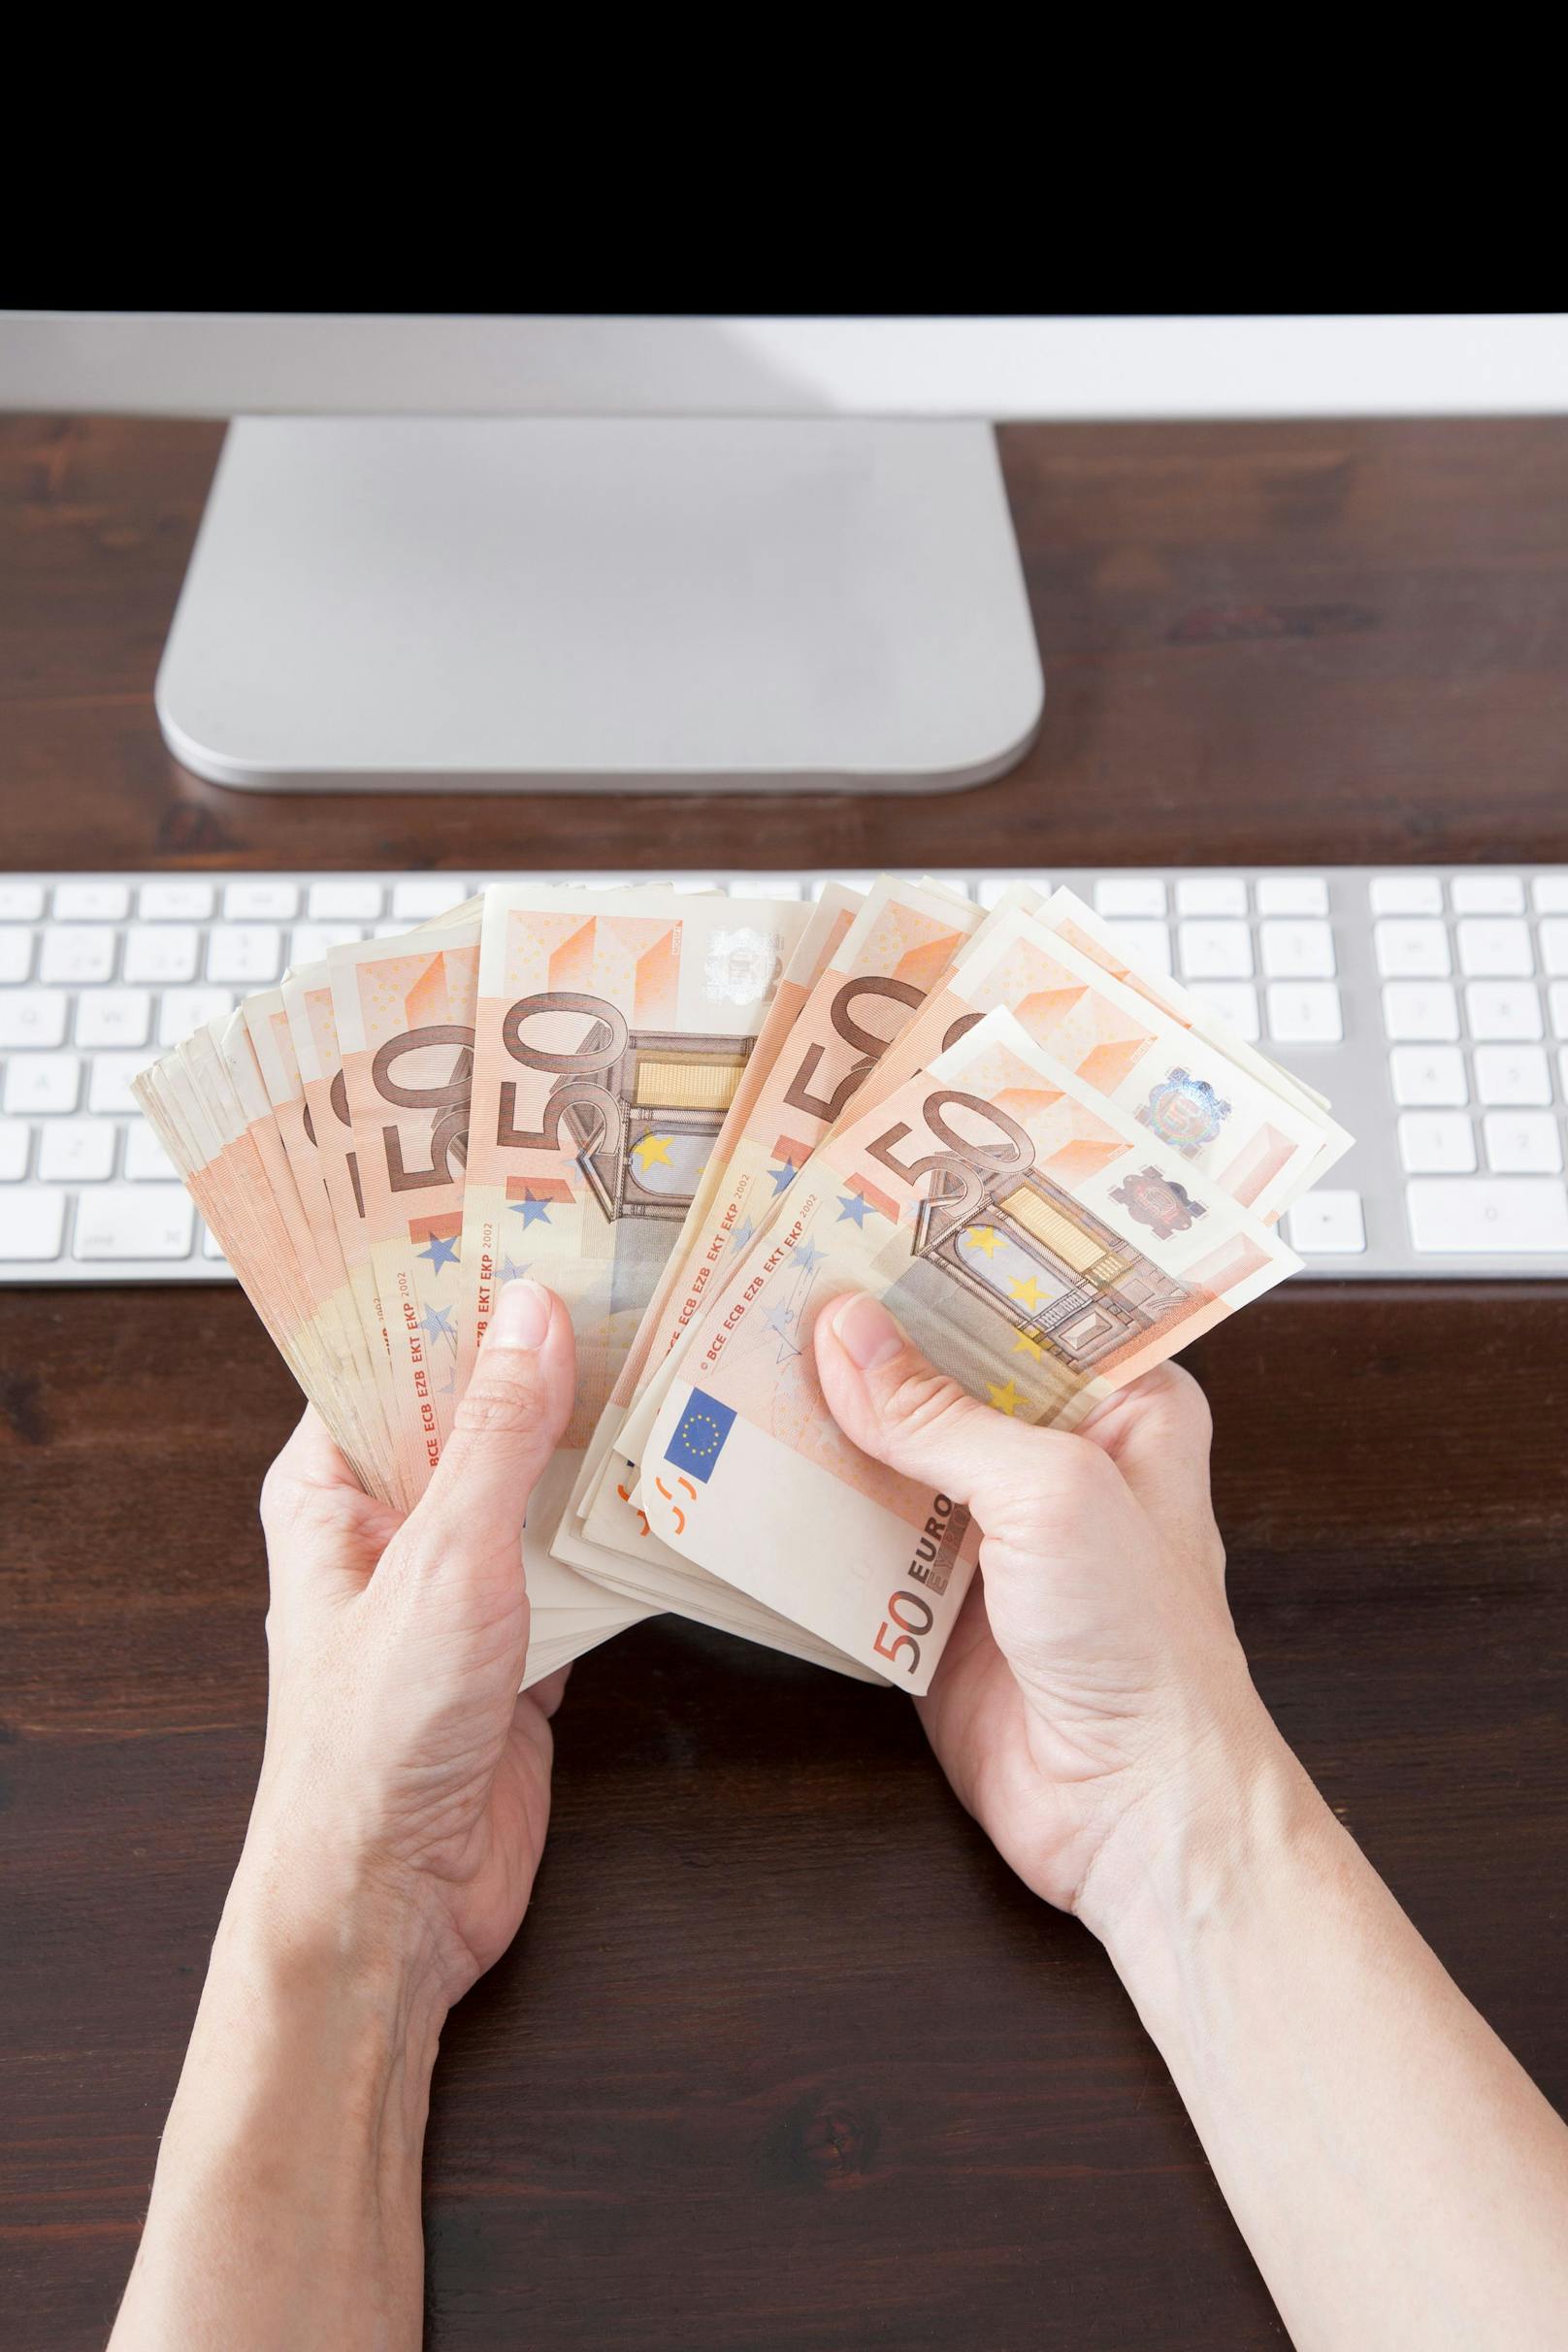 Nur wenige Klicks für 500 Euro – doch kaum einer tut es